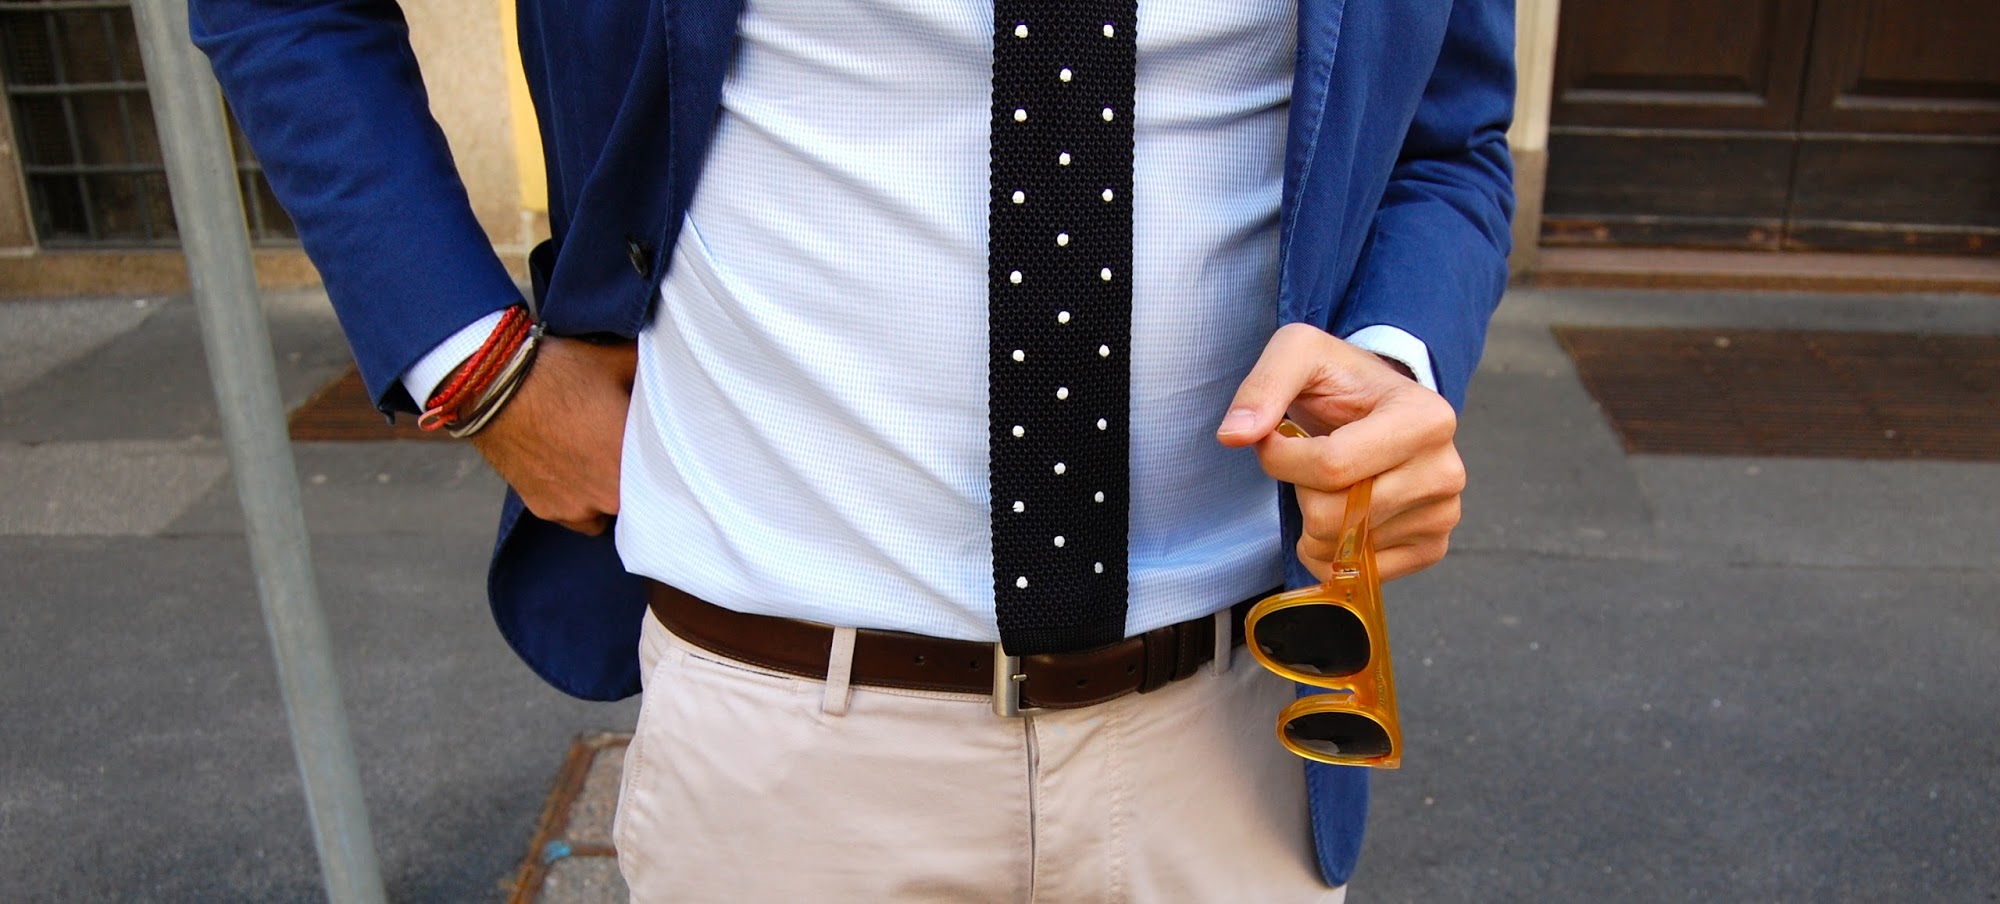 Regalo originale per papà: cravatta in maglia a pois